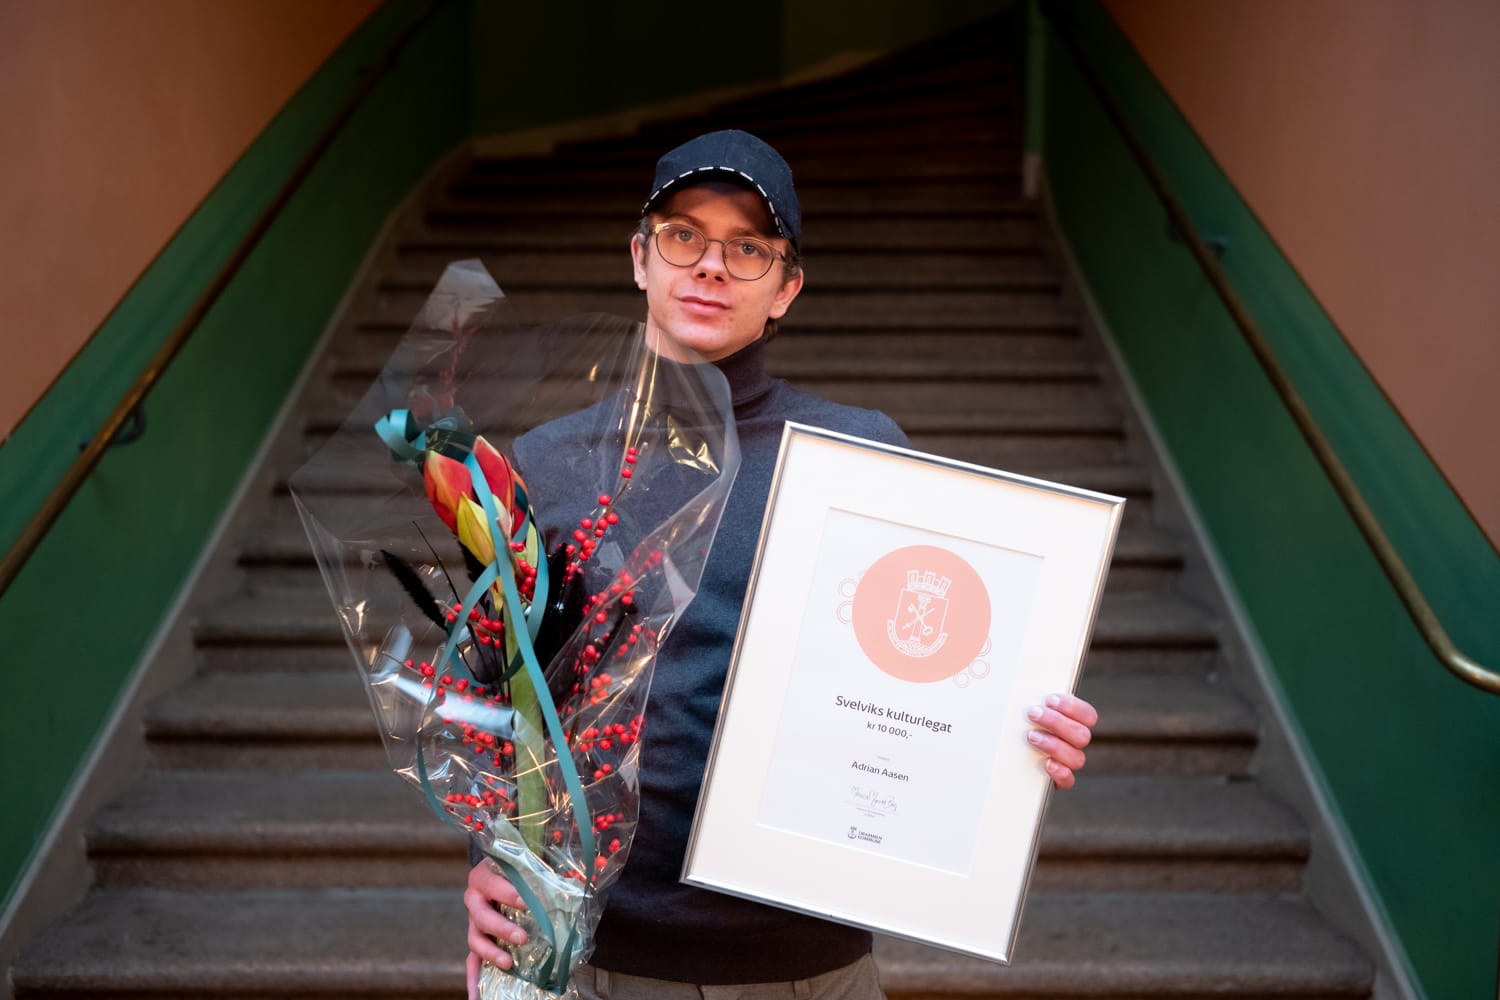 Adrian Aasen holder opp blomst og diplom.